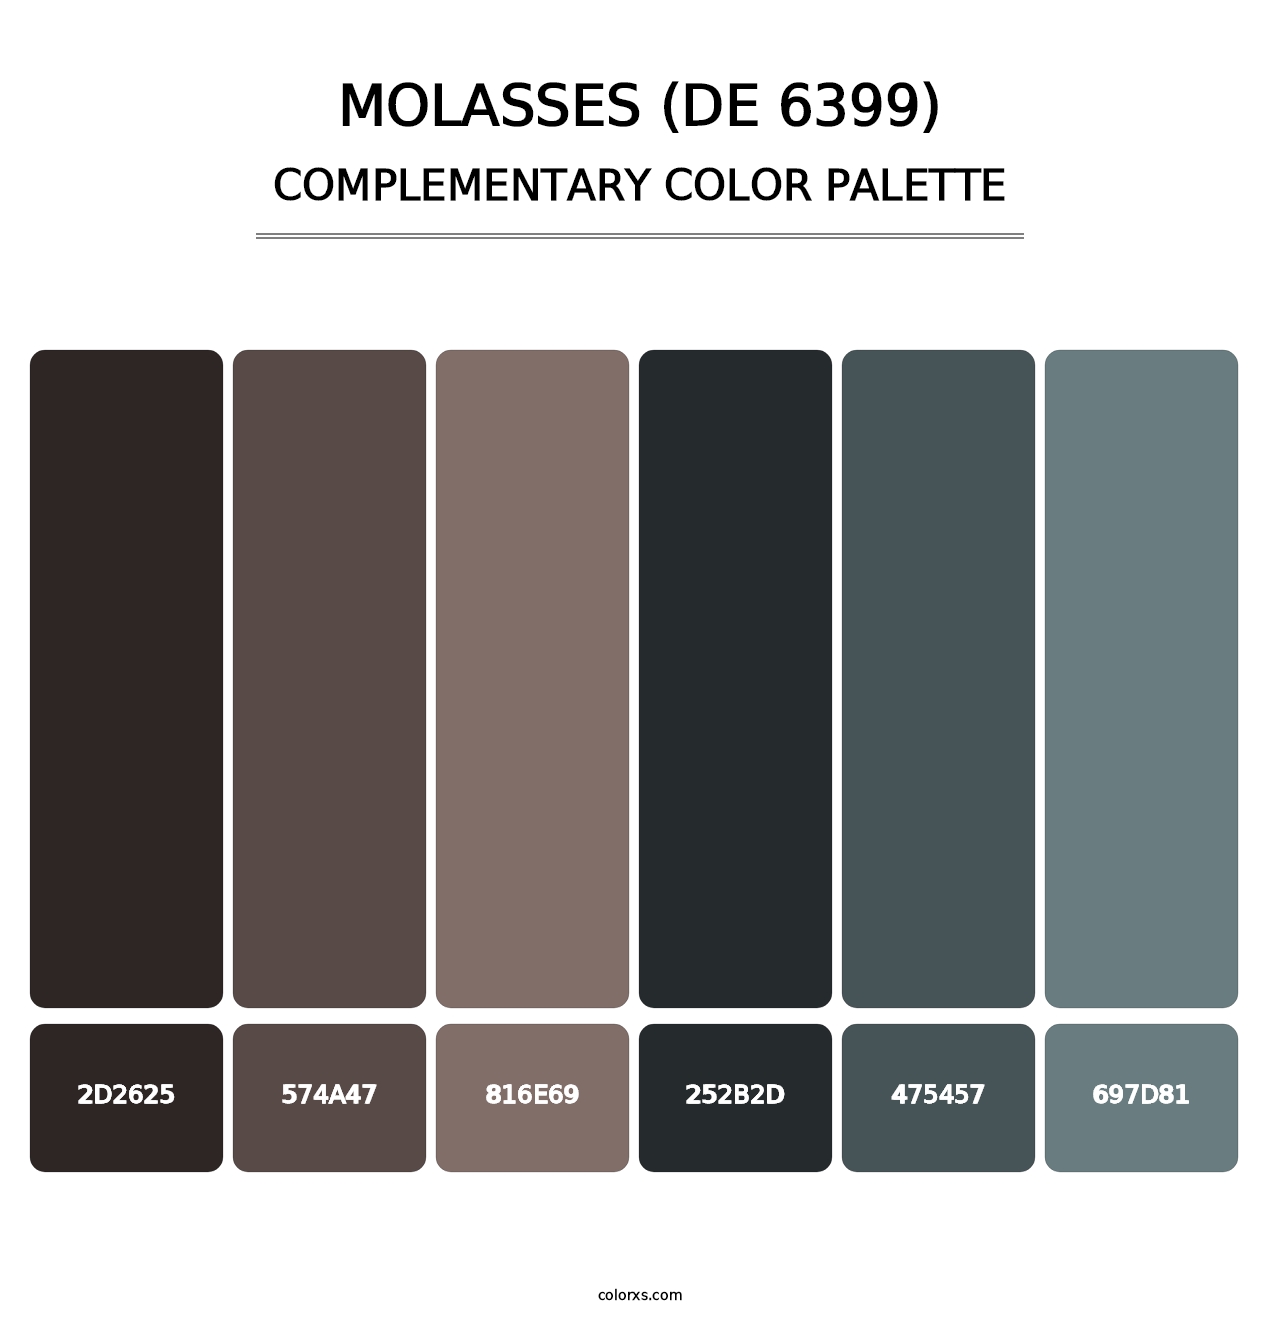 Molasses (DE 6399) - Complementary Color Palette